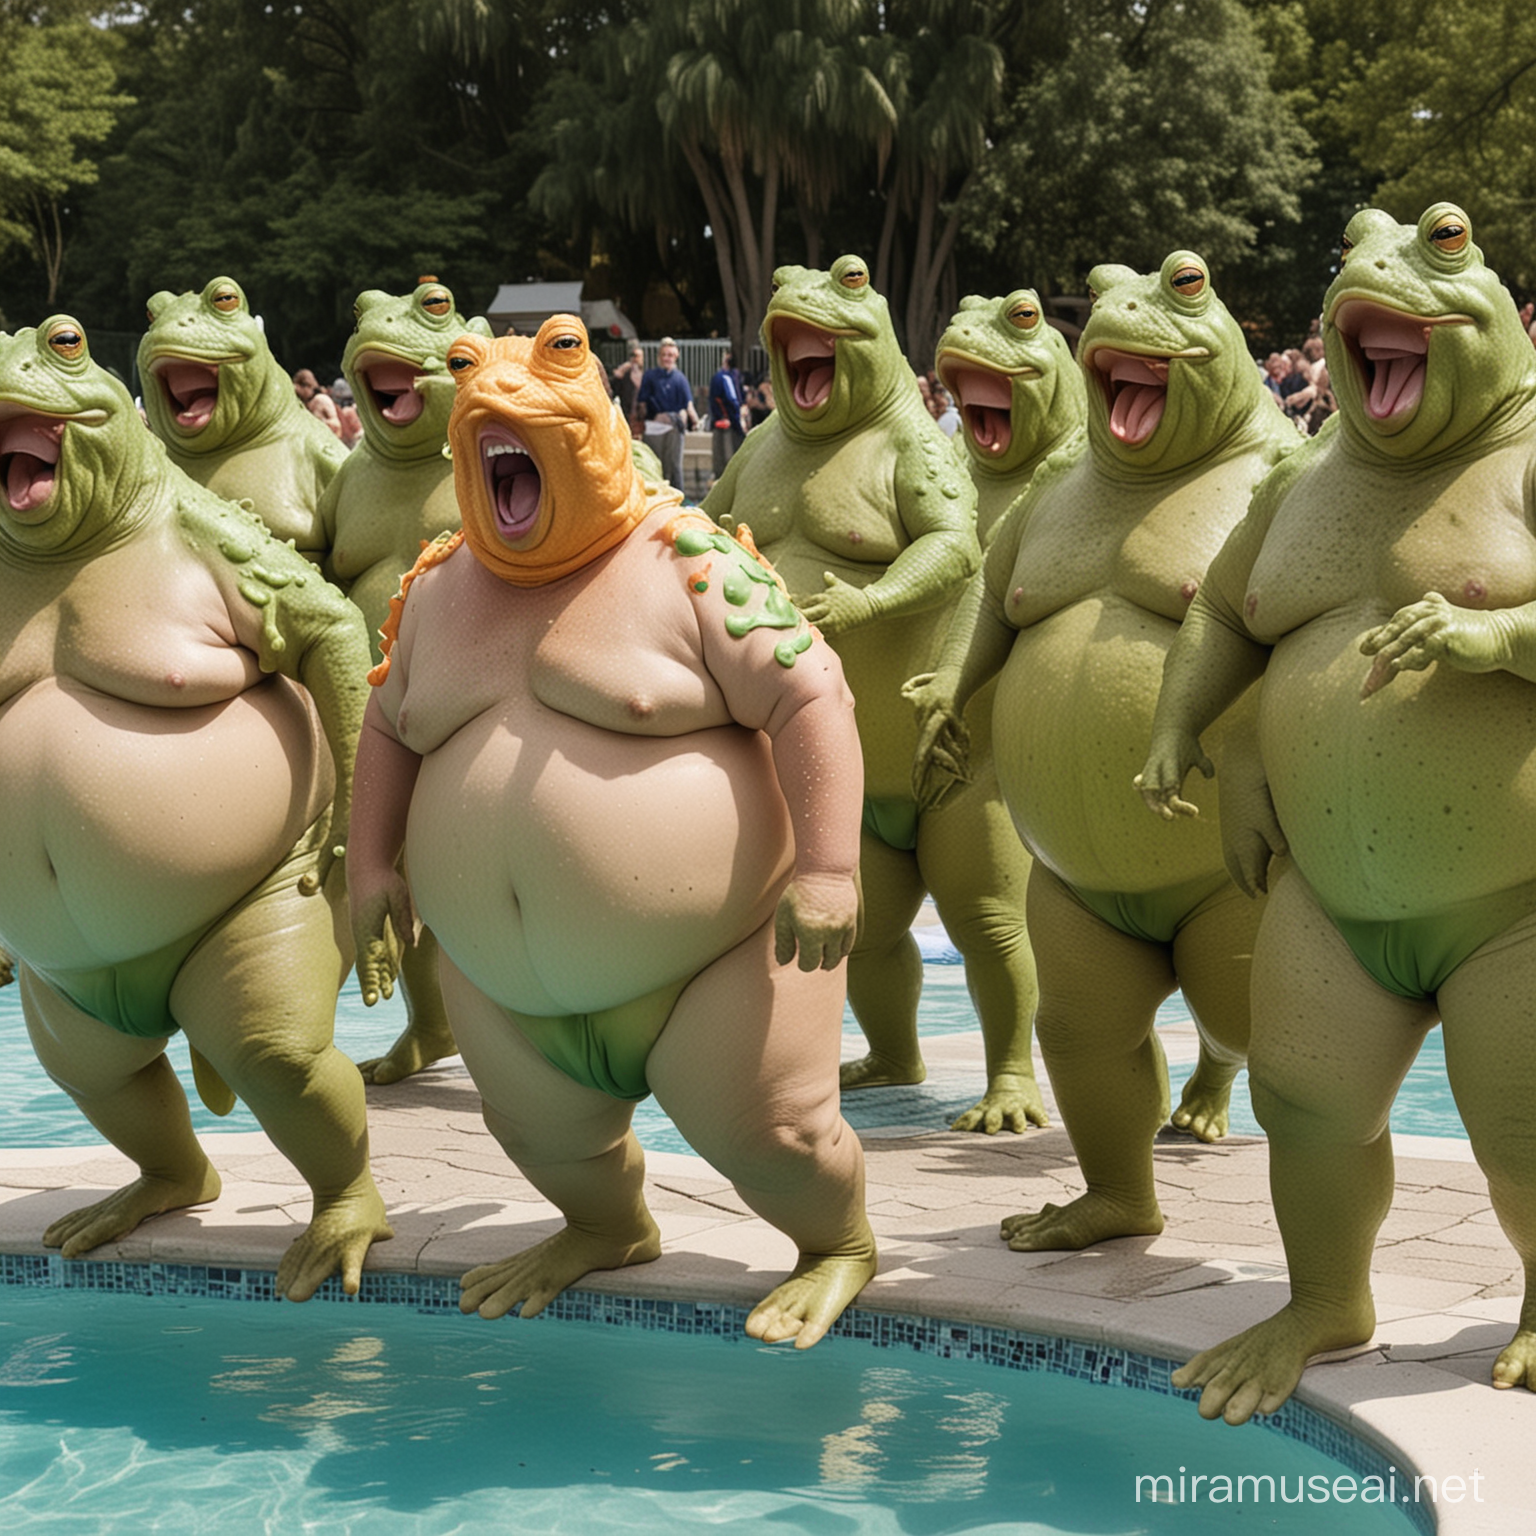 Viele dicke Männer hüpfen in den Pool vom wütenden Donald Trump im Froschkostüm 